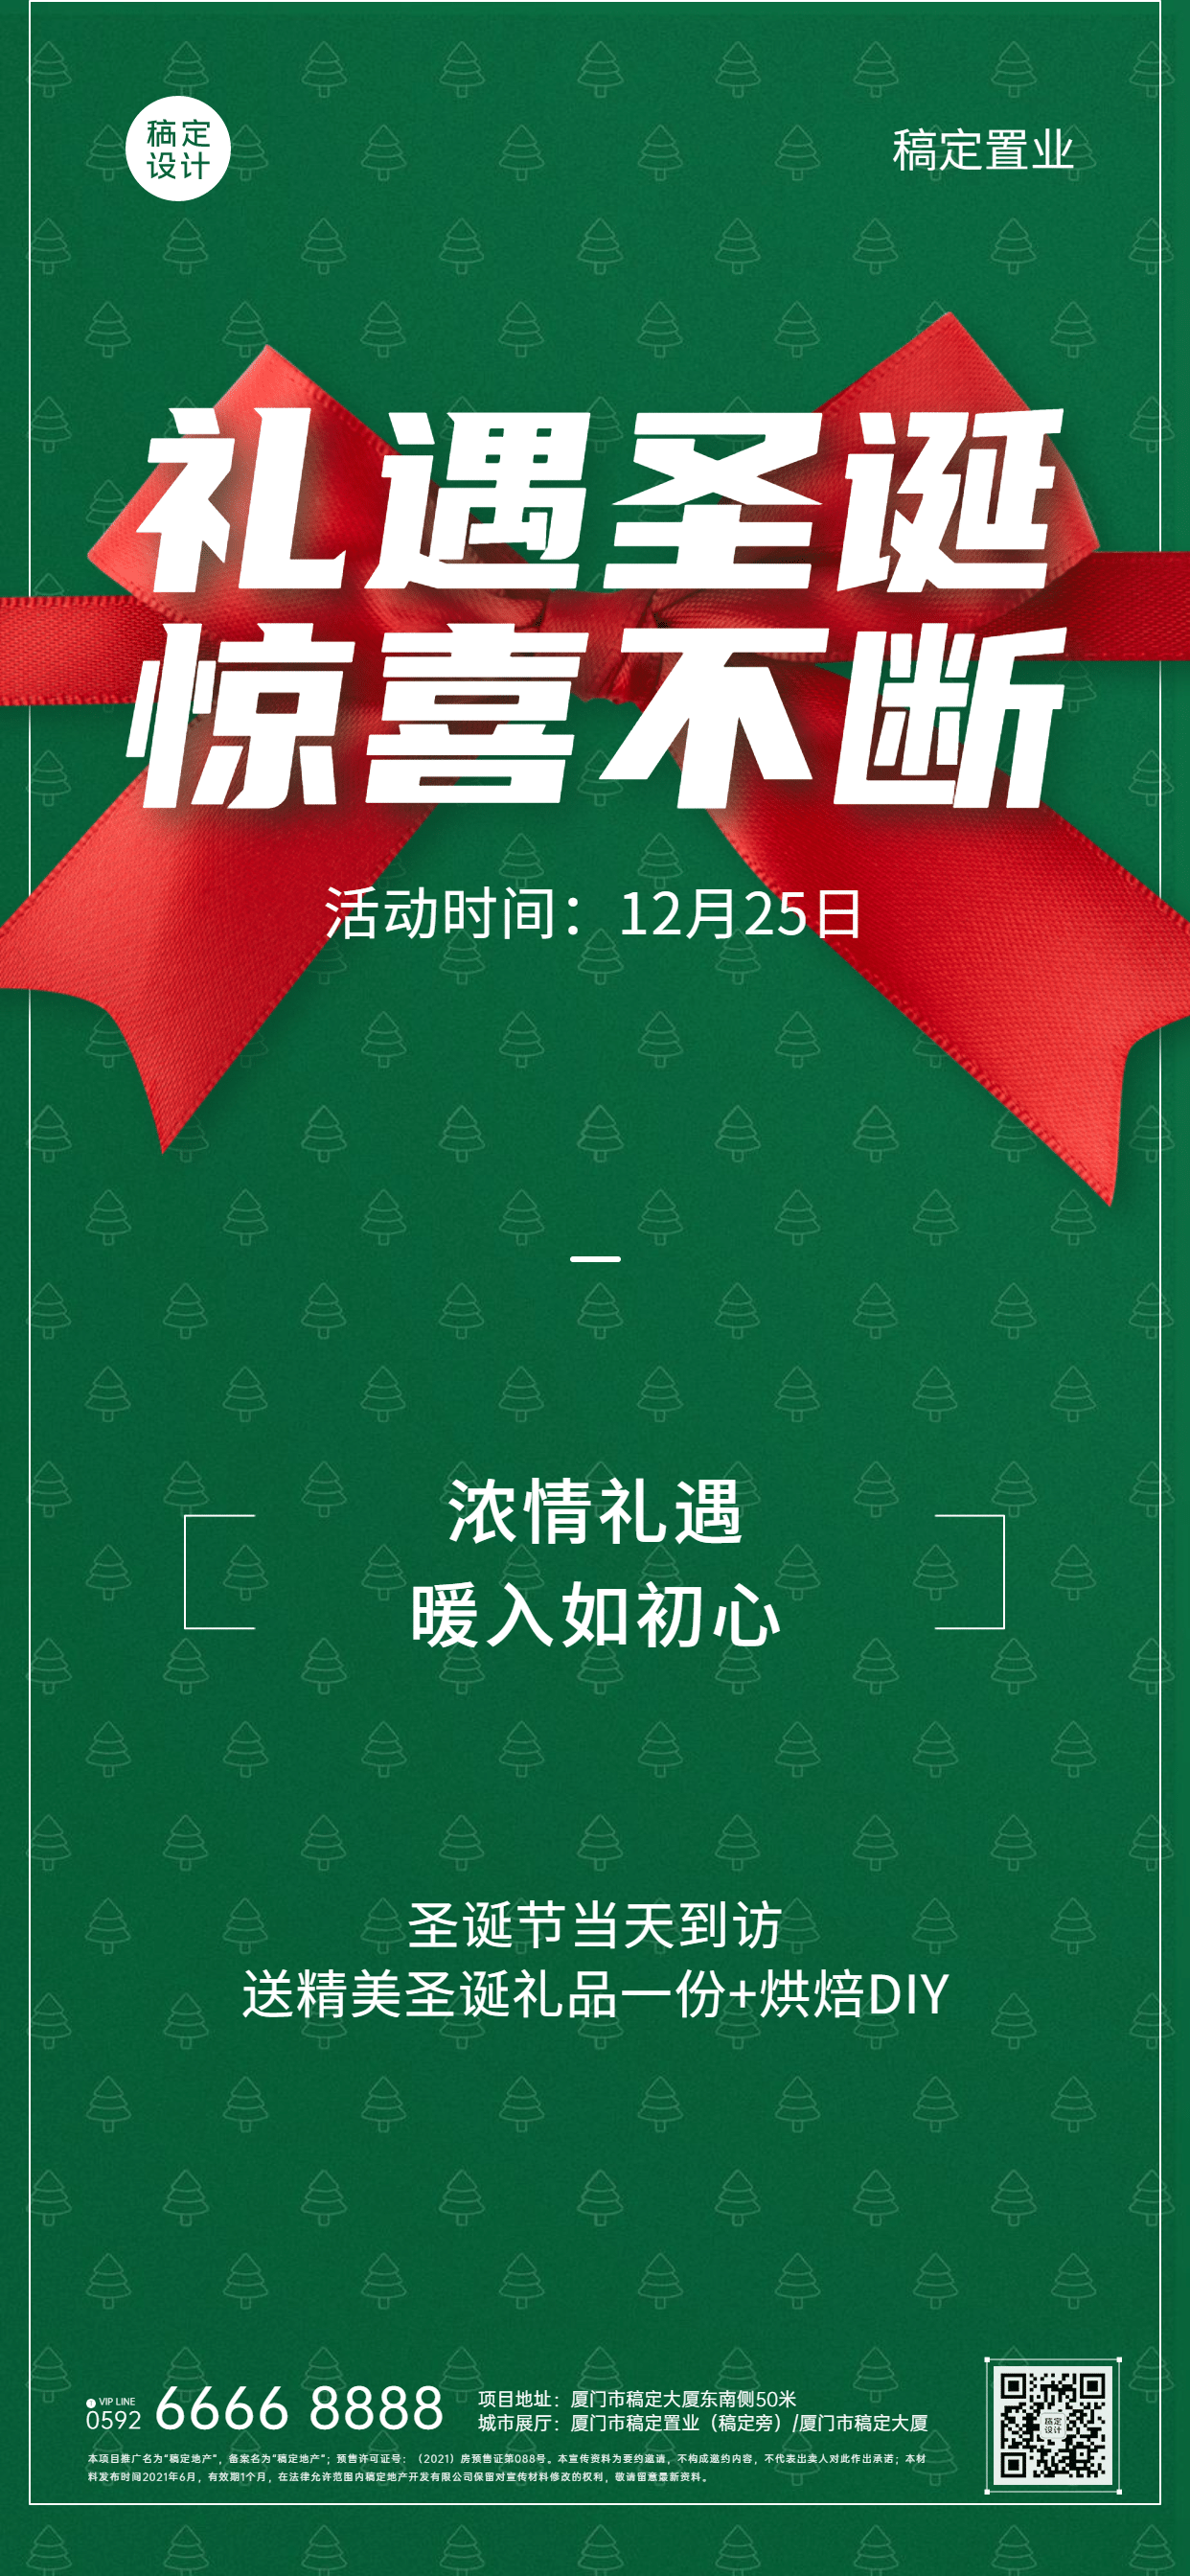 圣诞节房地产活动宣传蝴蝶结海报预览效果